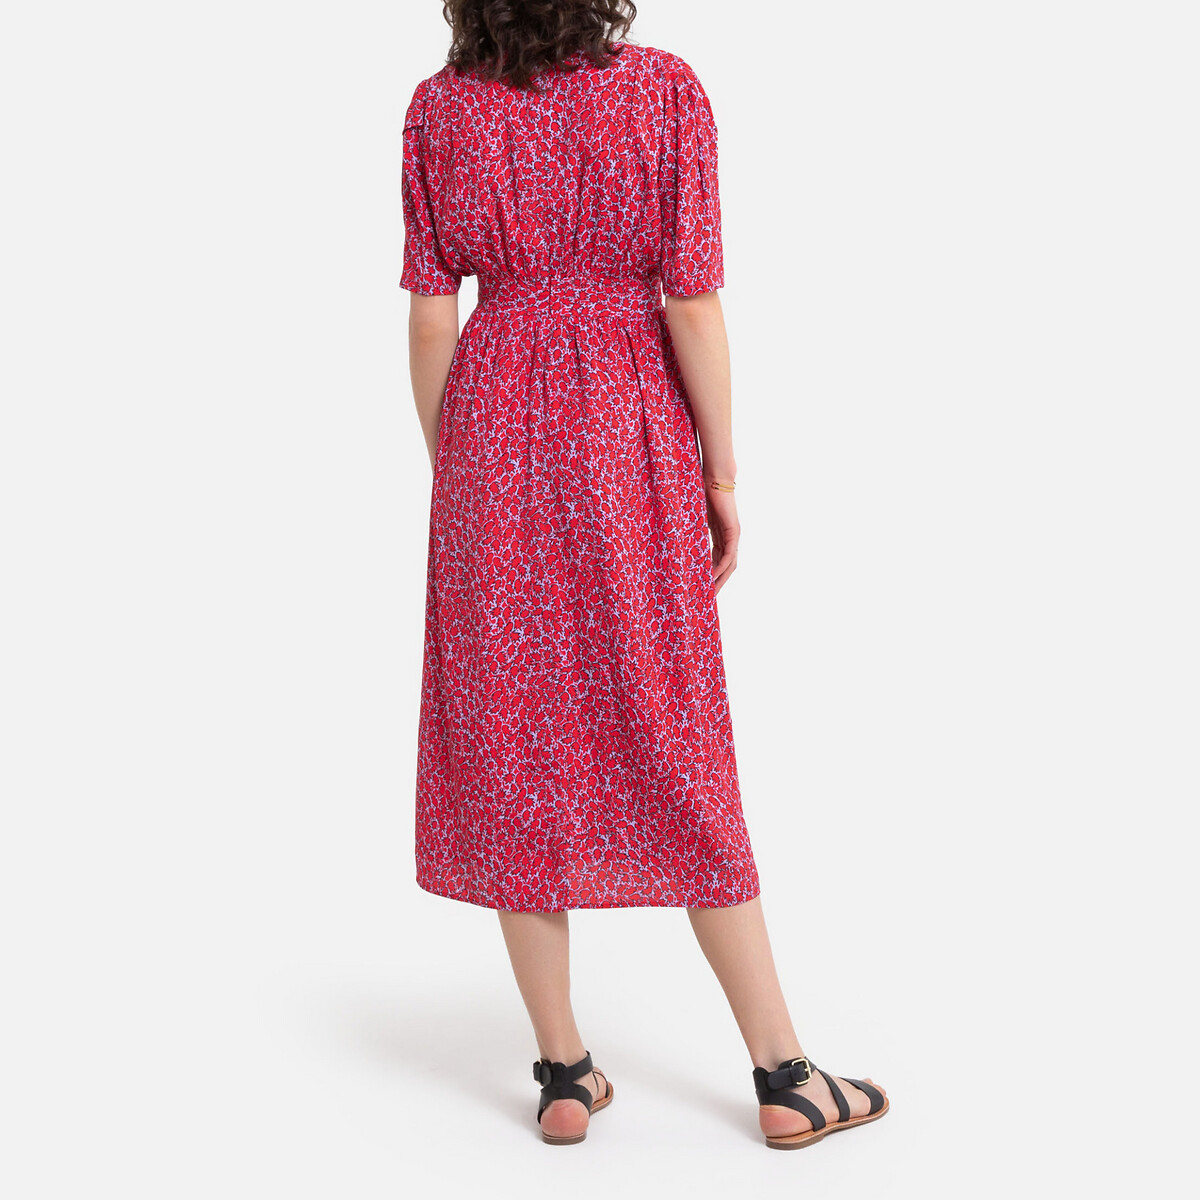 Платье La Redoute Длинное с запахом с принтом 1(S) красный, размер 1(S) Длинное с запахом с принтом 1(S) красный - фото 4